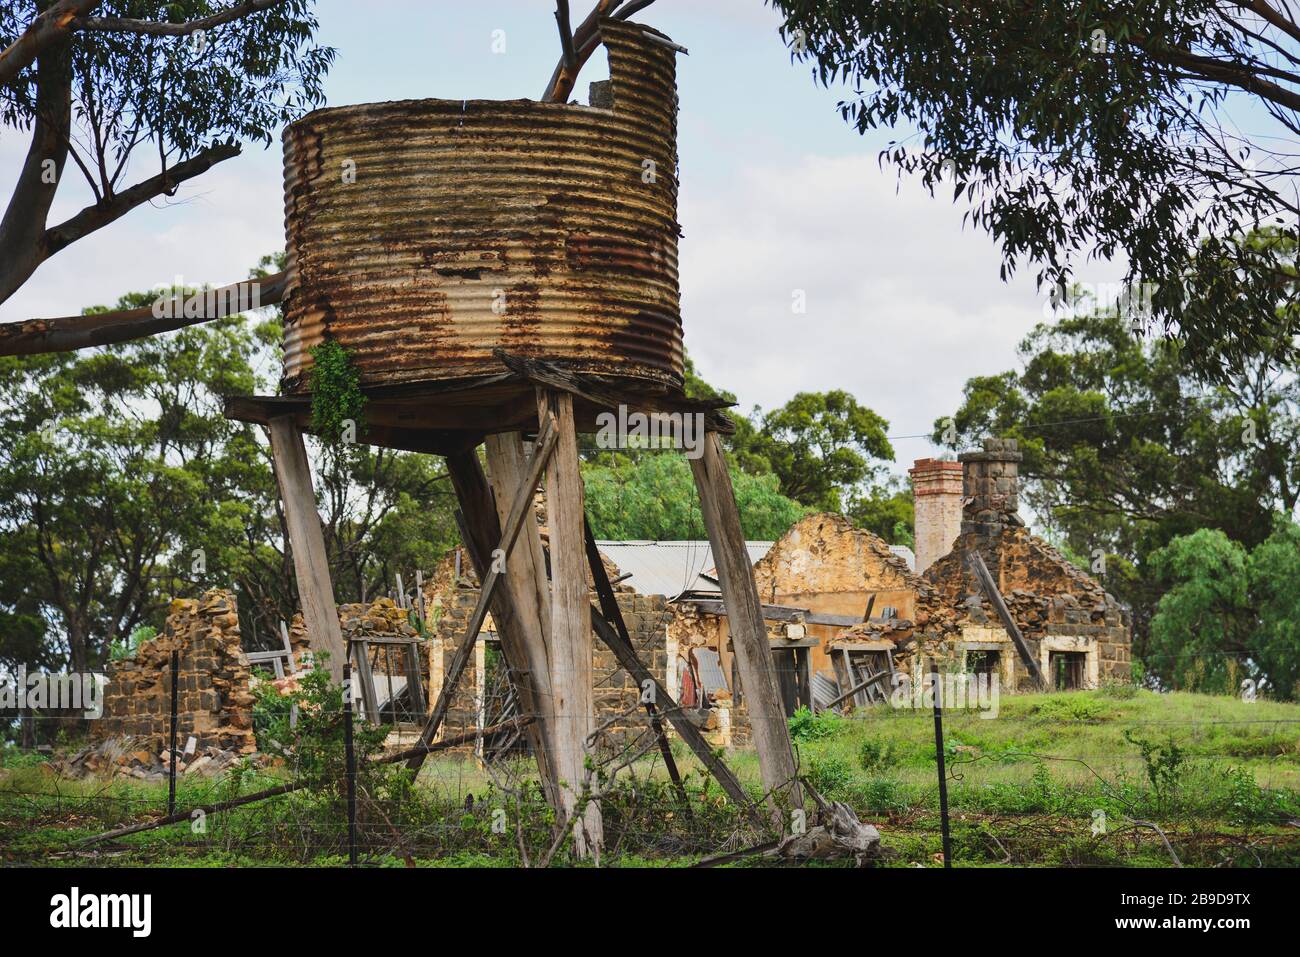 Old Stone Farmhouse in riparazione con Rusty Old Water Tank sotto albero Foto Stock